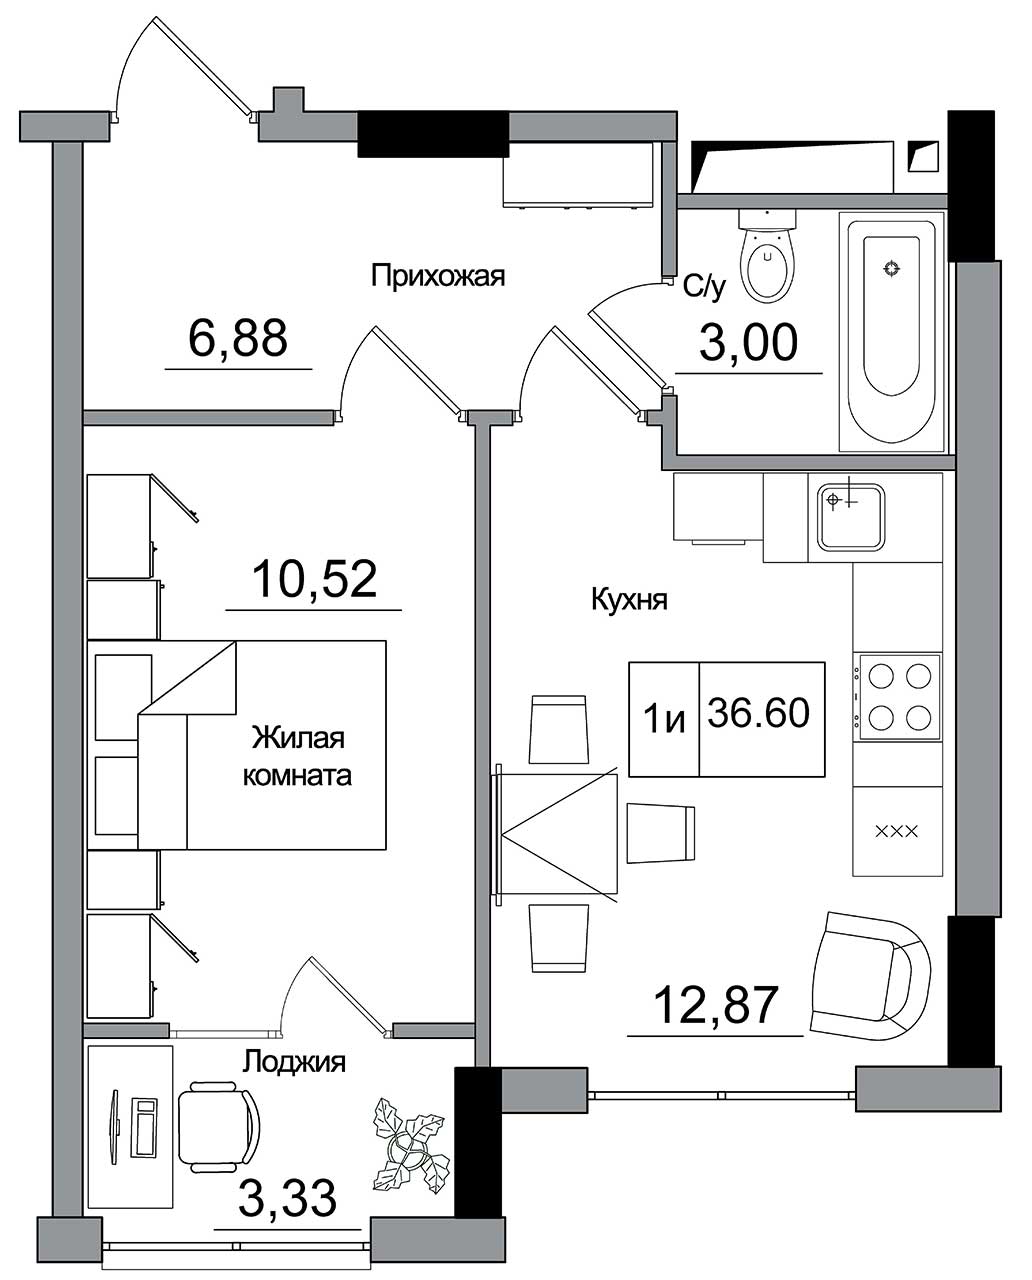 Планировка 1-к квартира площей 36.6м2, AB-16-05/00012.